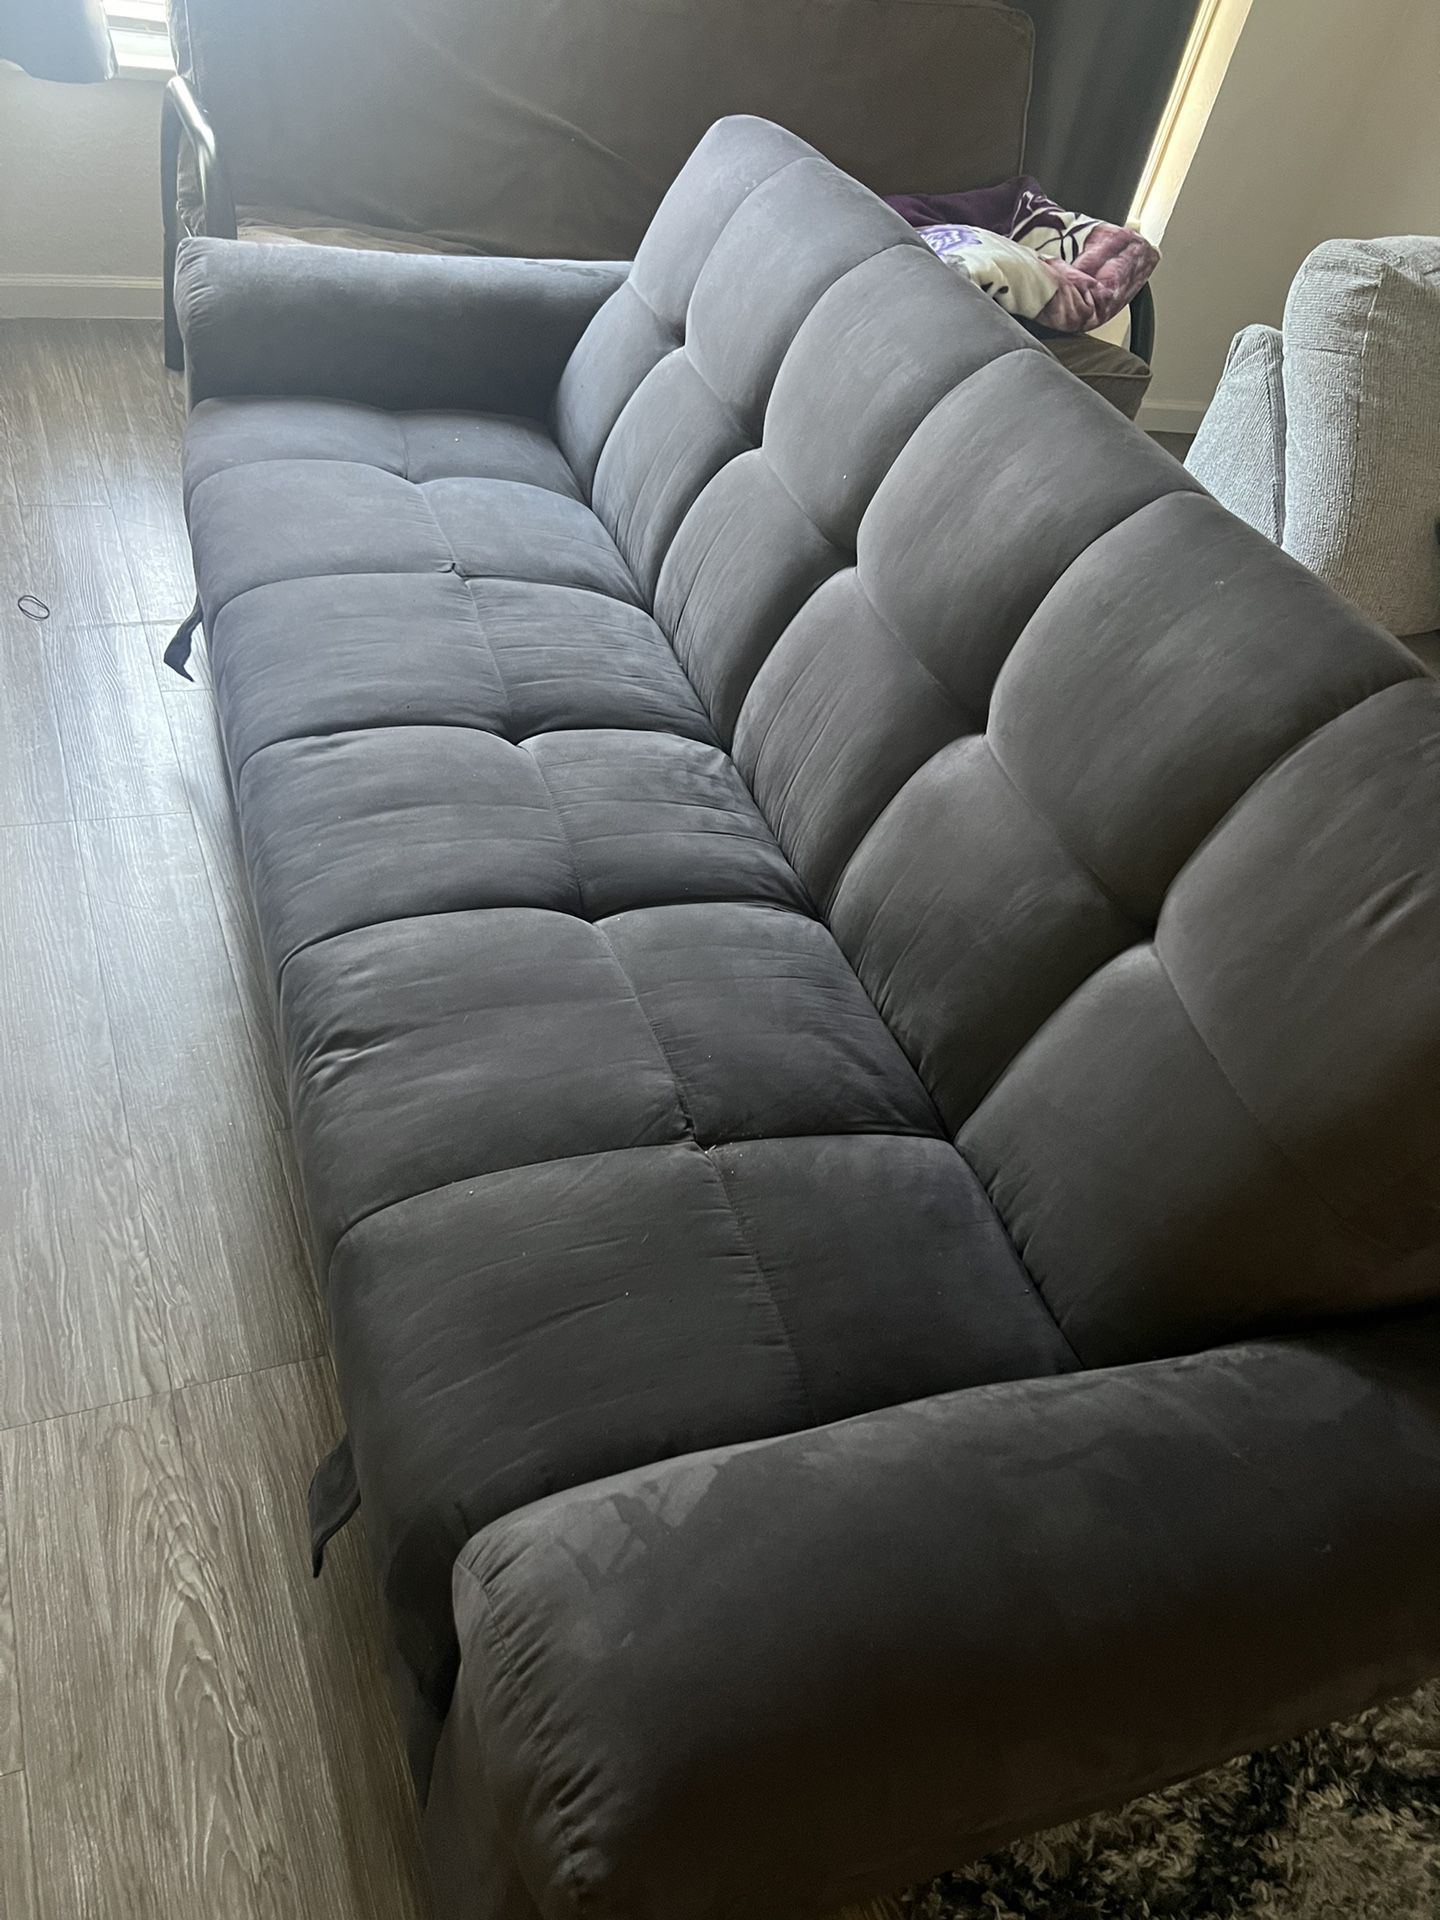 Sofa With Storage